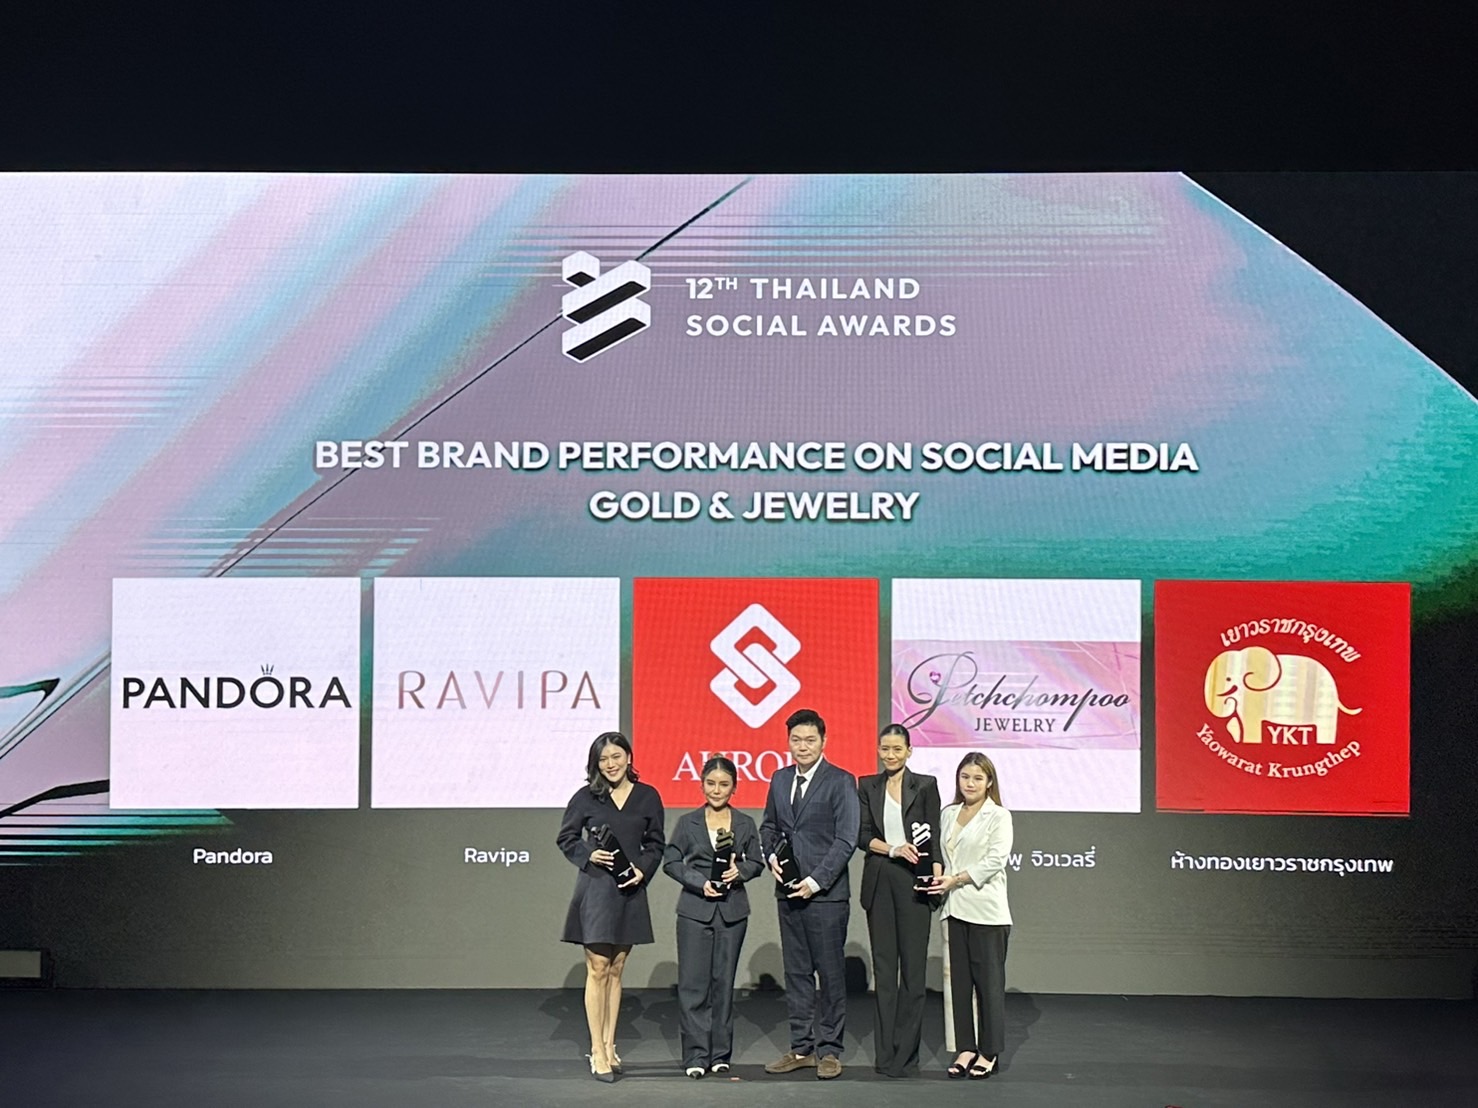 เพชรชมพูจิวเวลรี่  แบรนด์เครื่องประดับเพชรไทย  ได้รับรางวัล Finalist “ Best Brand Performance on Social Media”  สาขา Gold and Jewelry